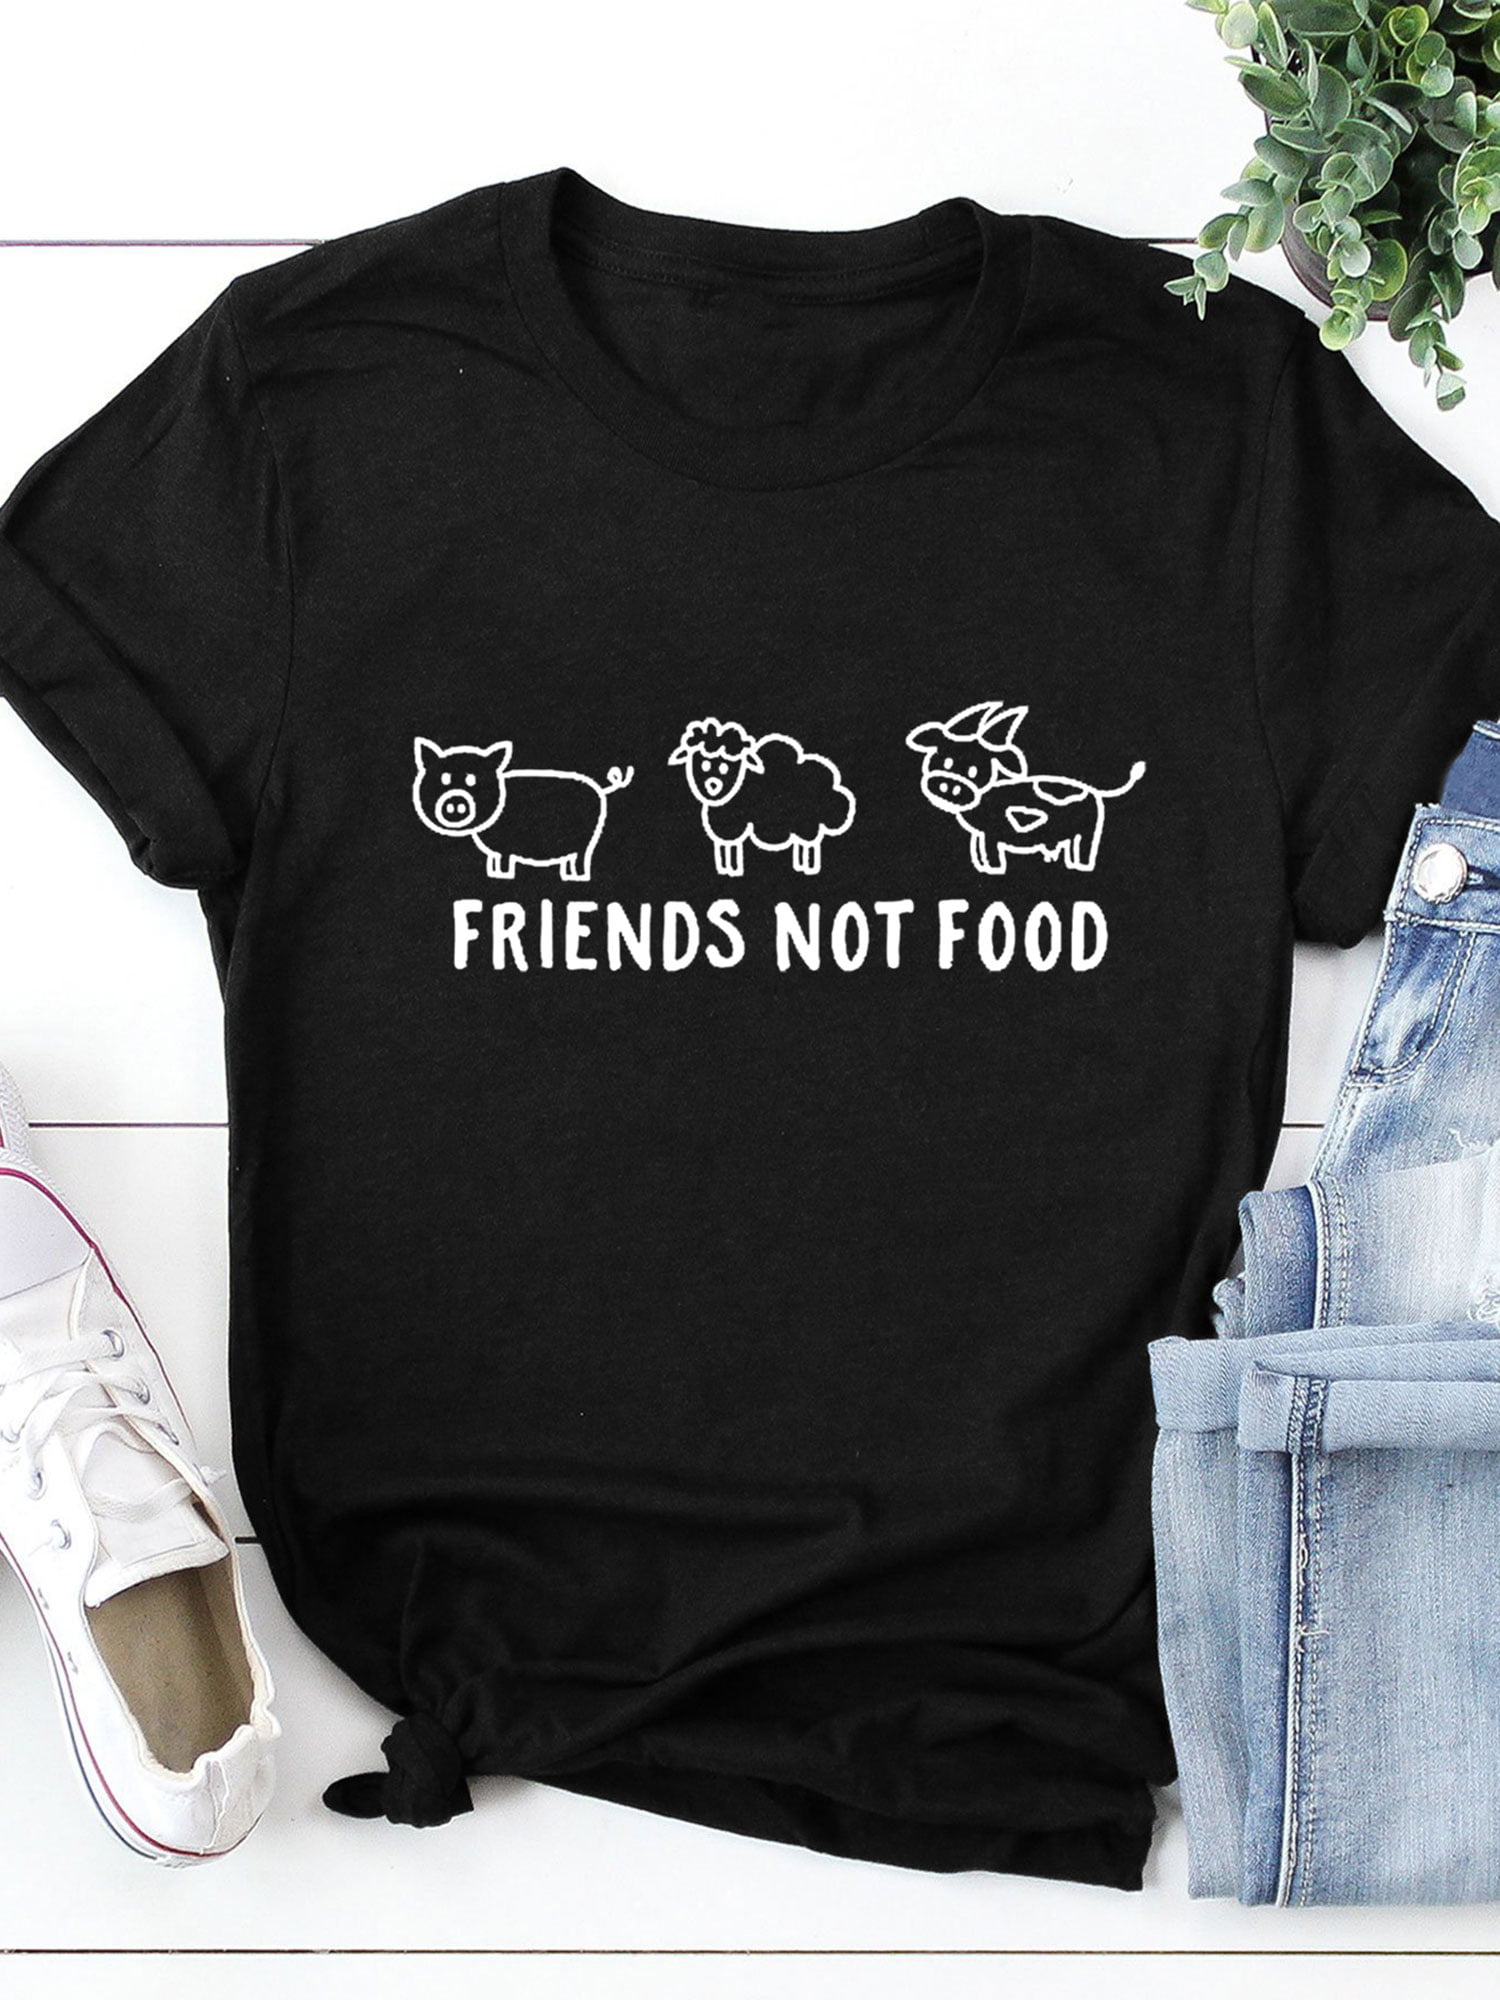 Friends Women's short sleeve t-shirt Not Food